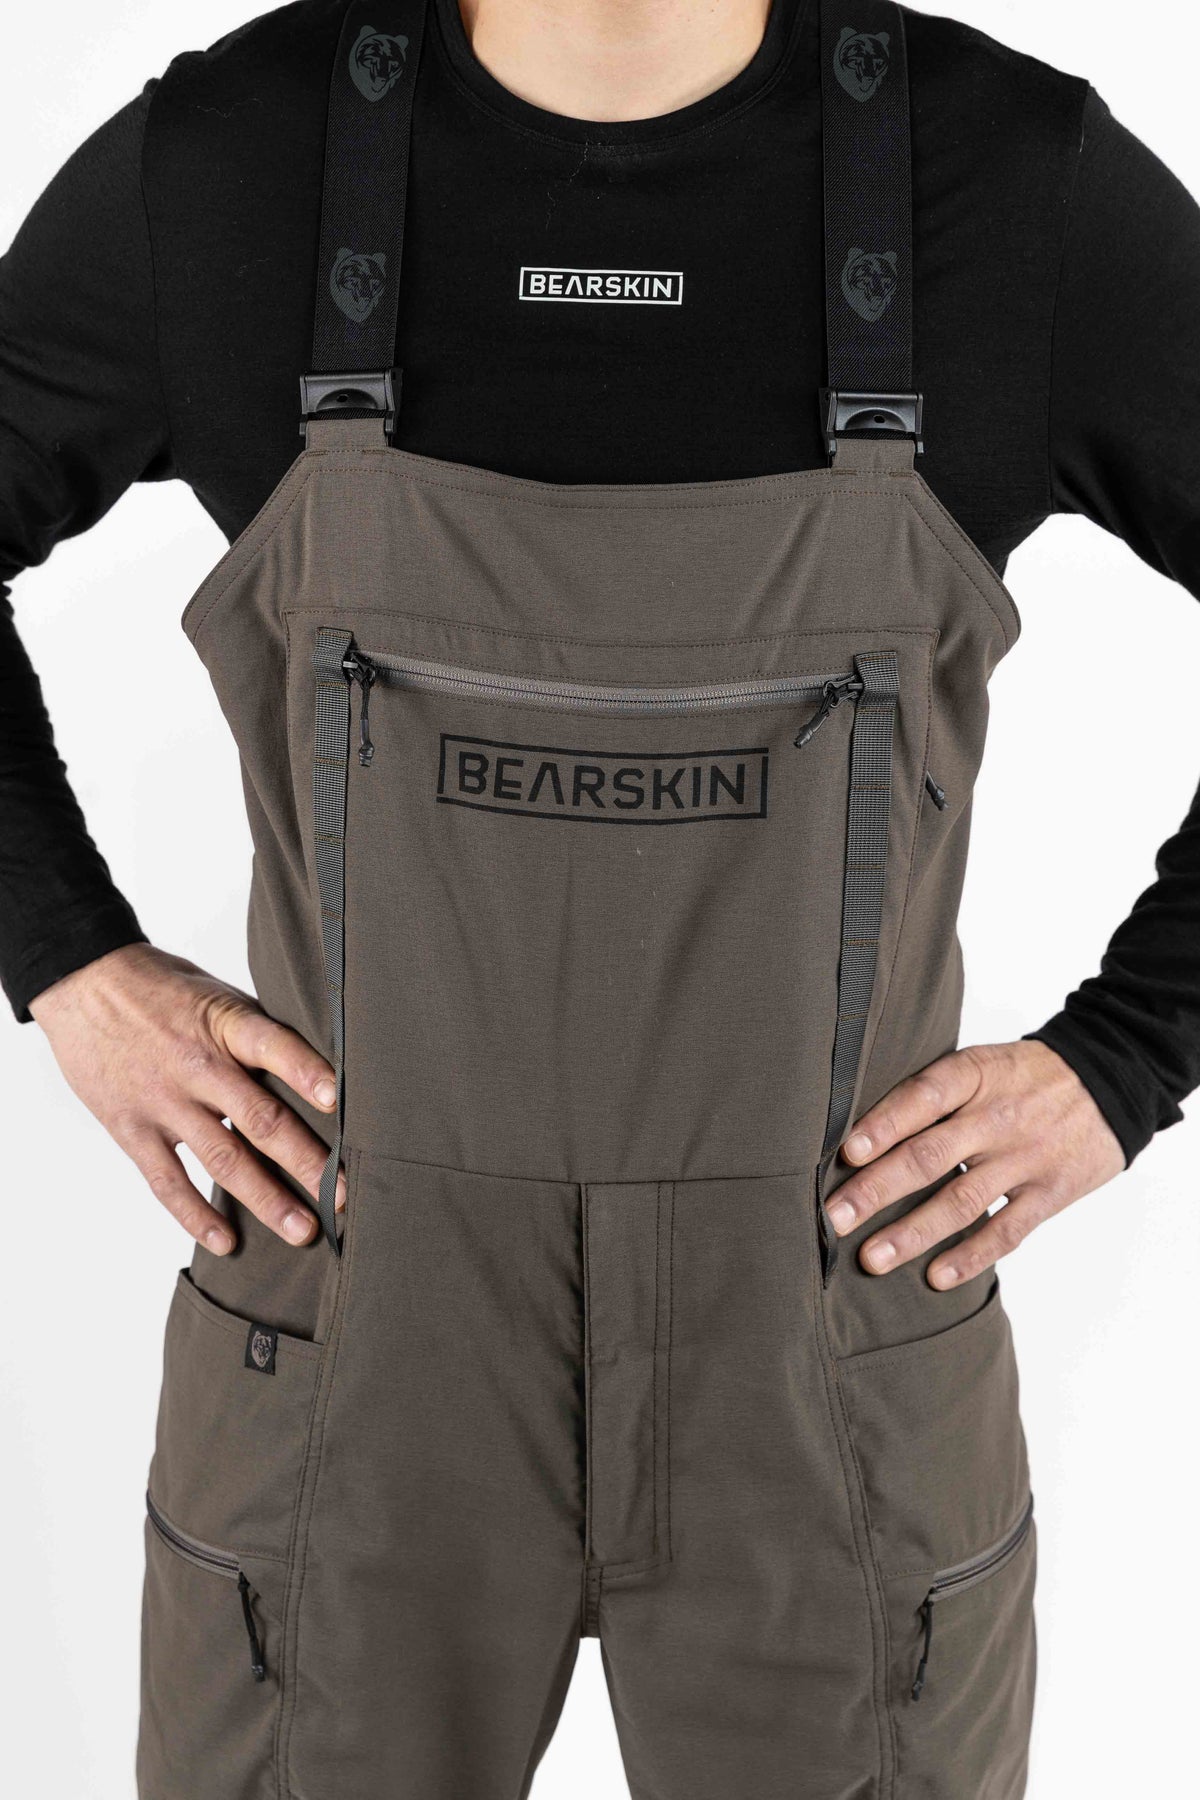 Bearskin Cordura Bib Pants